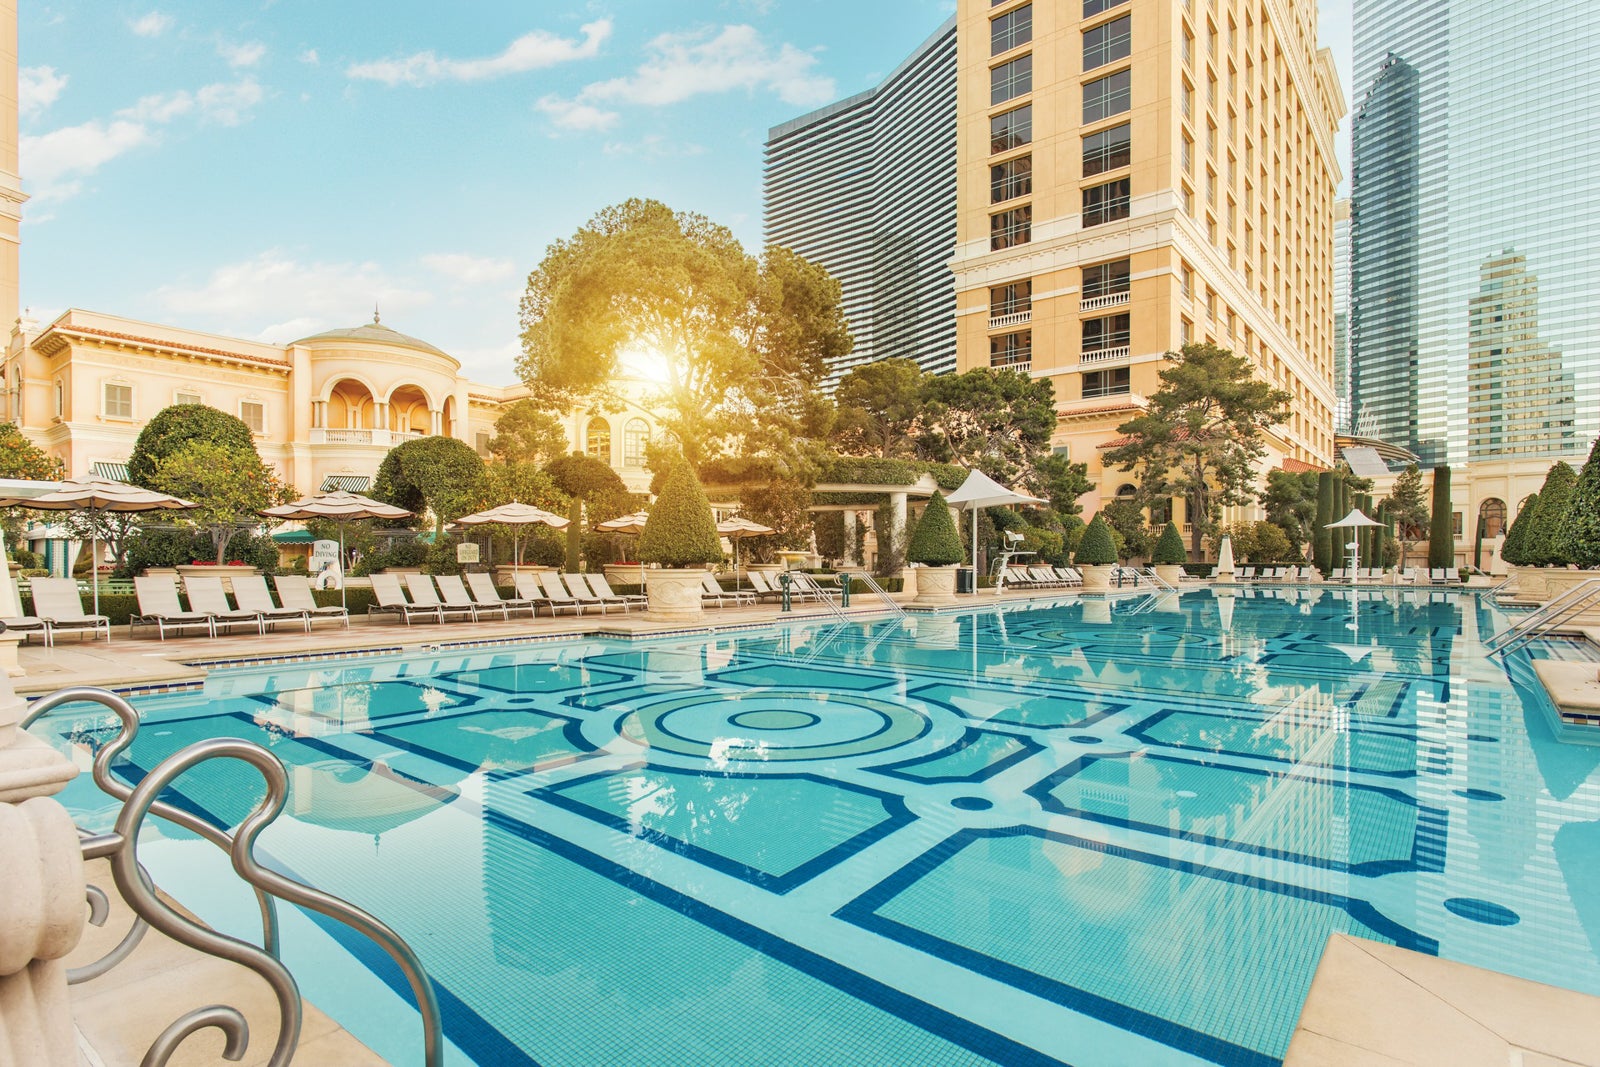 The best hotel pools in Las Vegas 2023